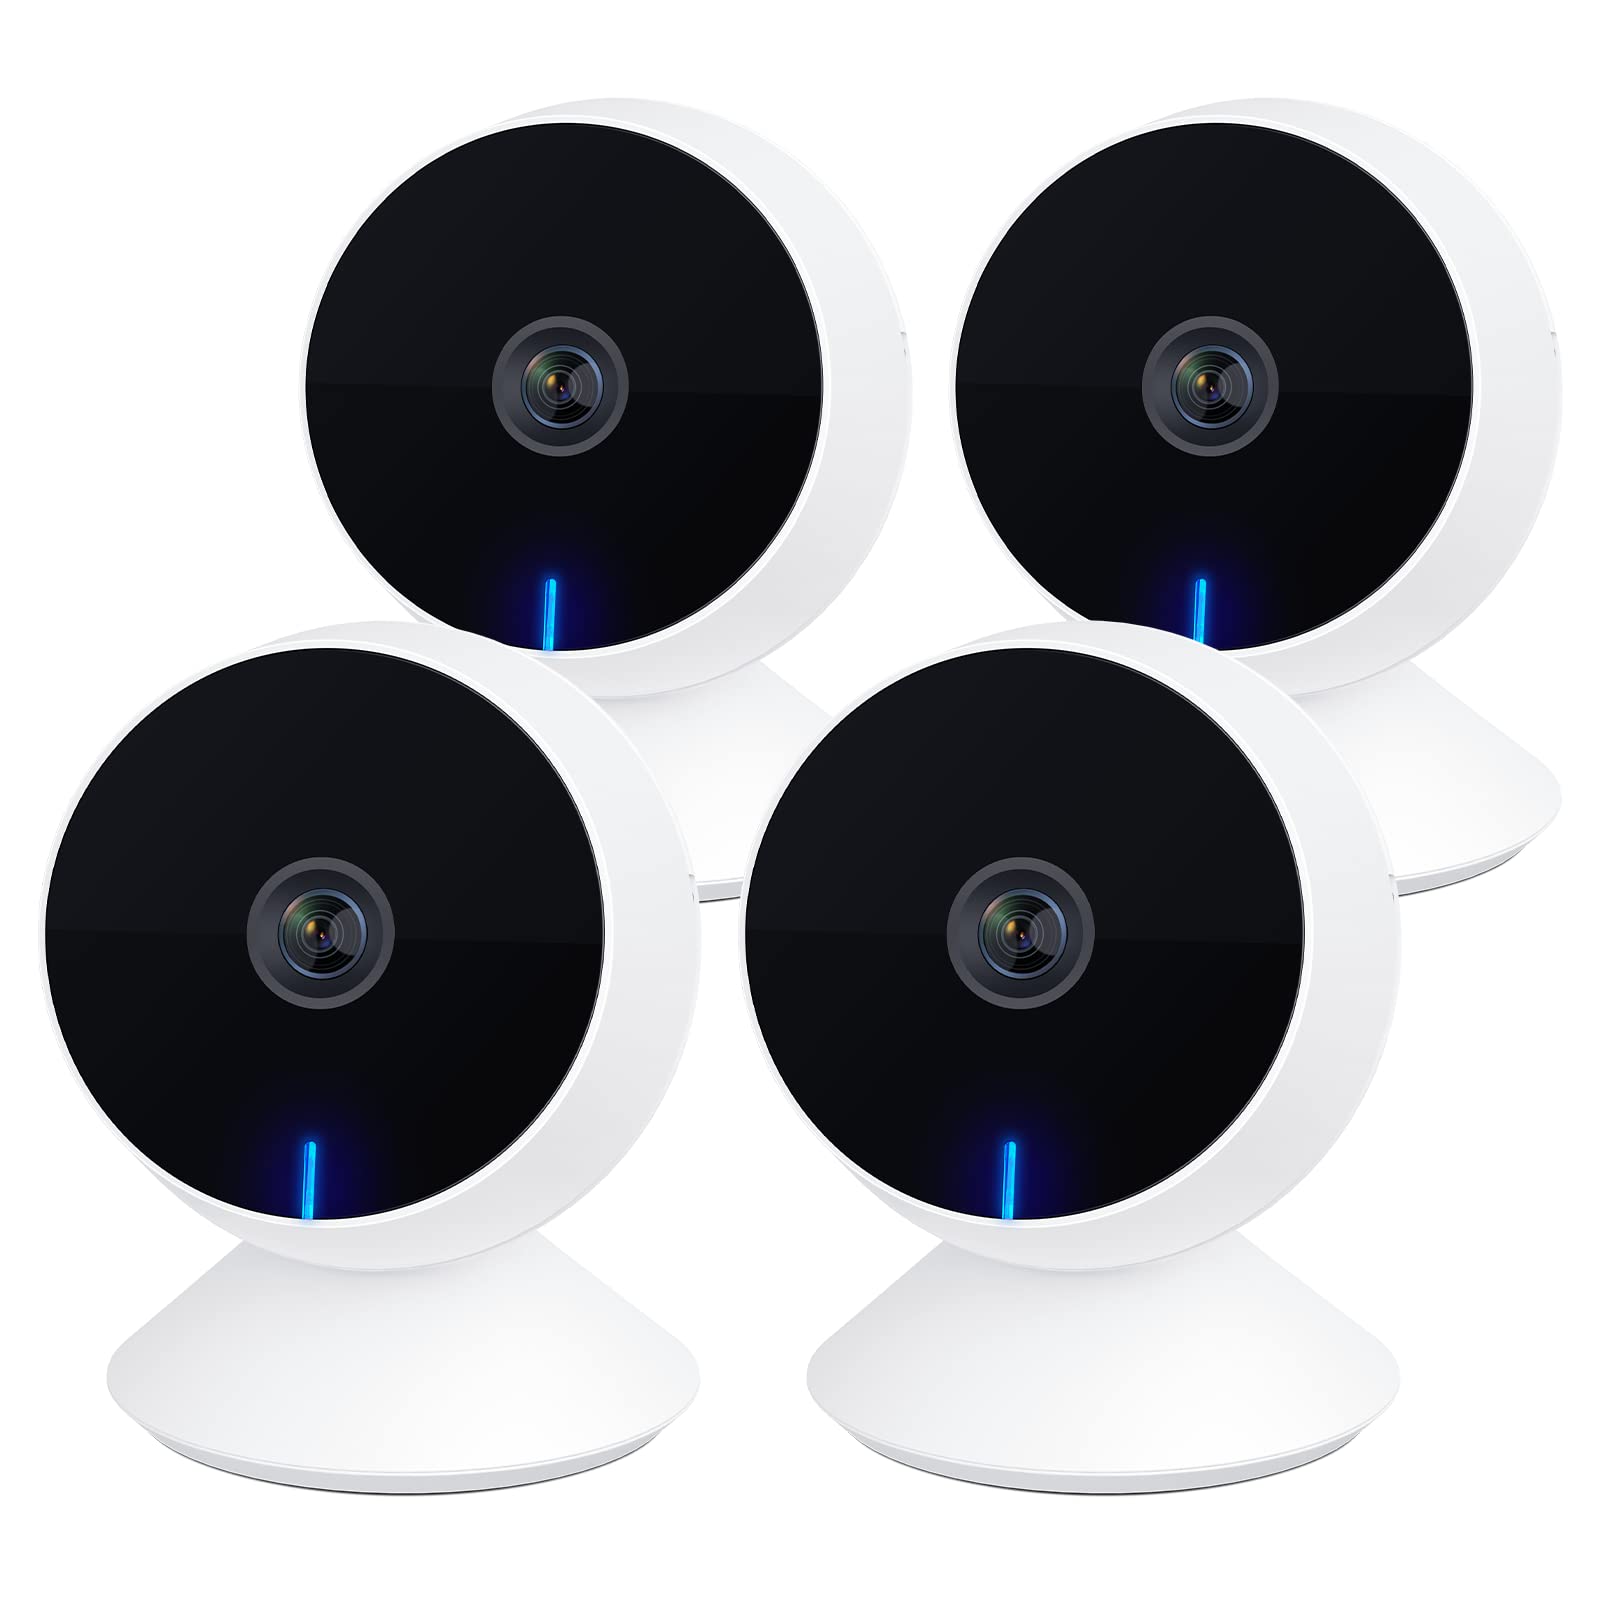 Laxihub M1 Mini WiFi Kameras 4 PC, 1080p Full HD Baby Monitor mit Nachtsicht, Indoor Hund Haustier Kamera mit Telefon APP und Zwei-Wege-Audio, Bewegung/Ton-Erkennung, Alexa/Google Assistant kompatibel